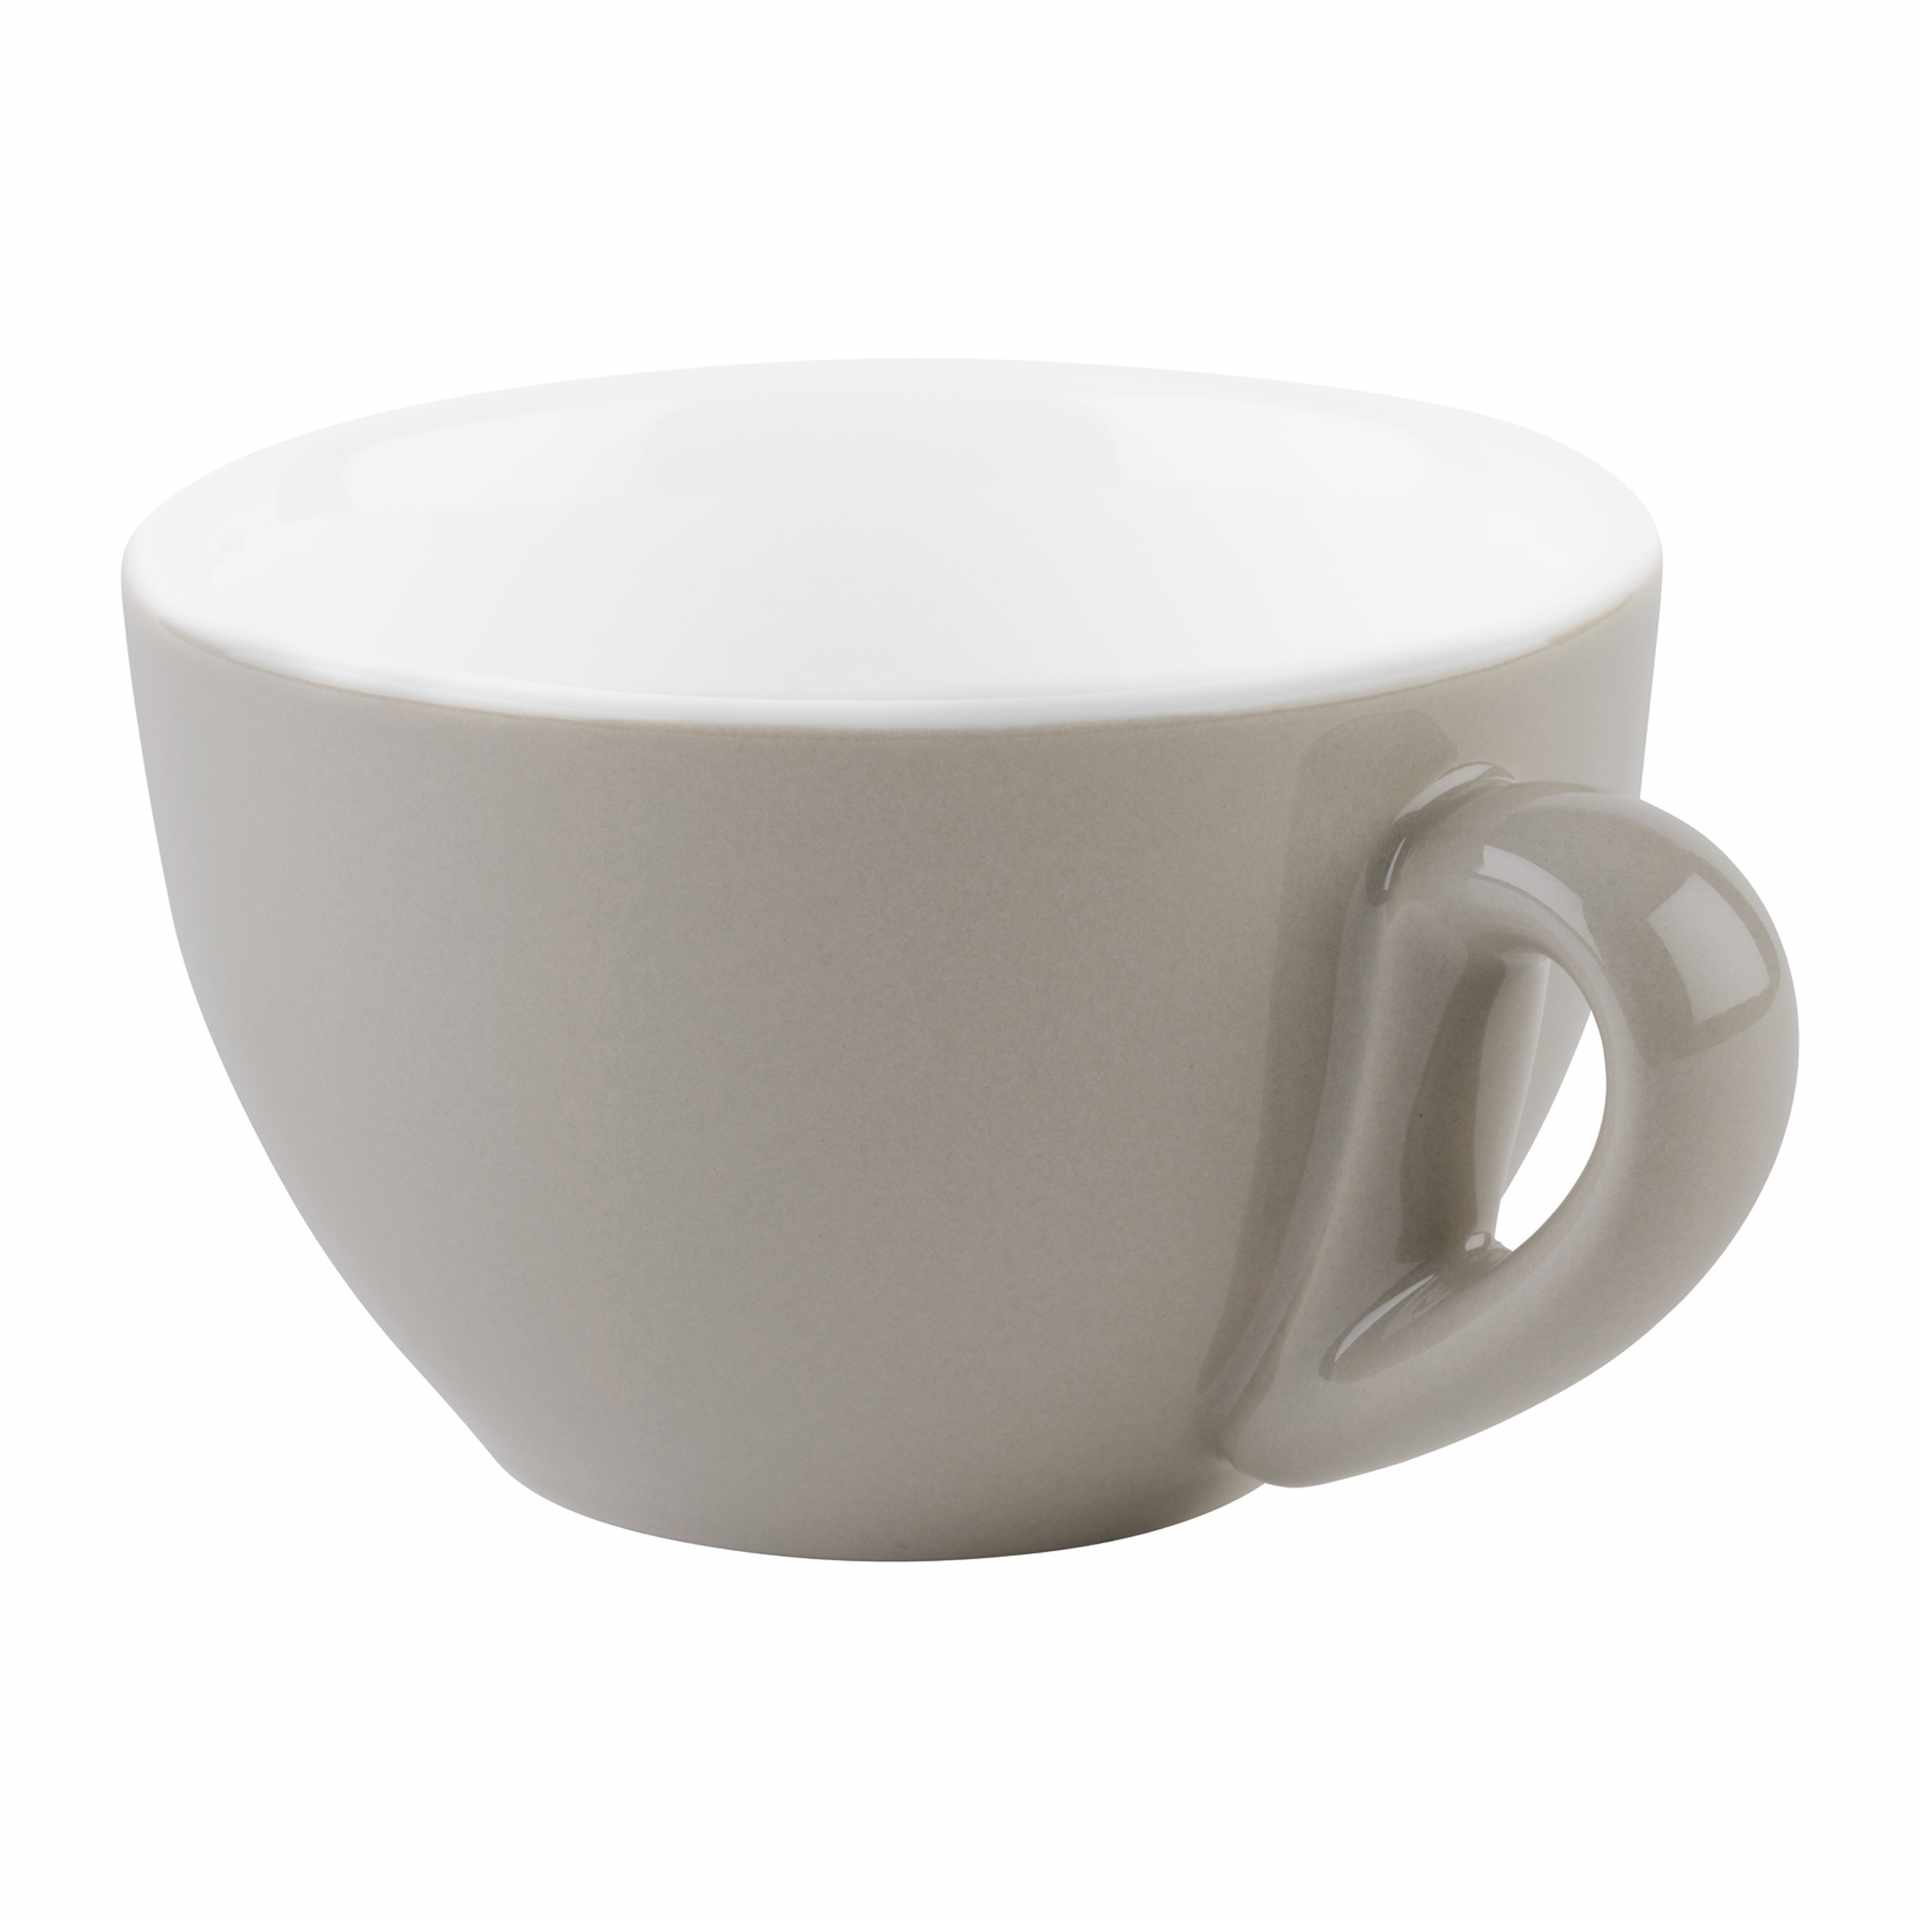 Kaffee-Tasse - Serie Snug - grau - Höhe 6,0 cm - Ø 9,5 cm - Inhalt 0,20 l - Porzellan - 16003-B